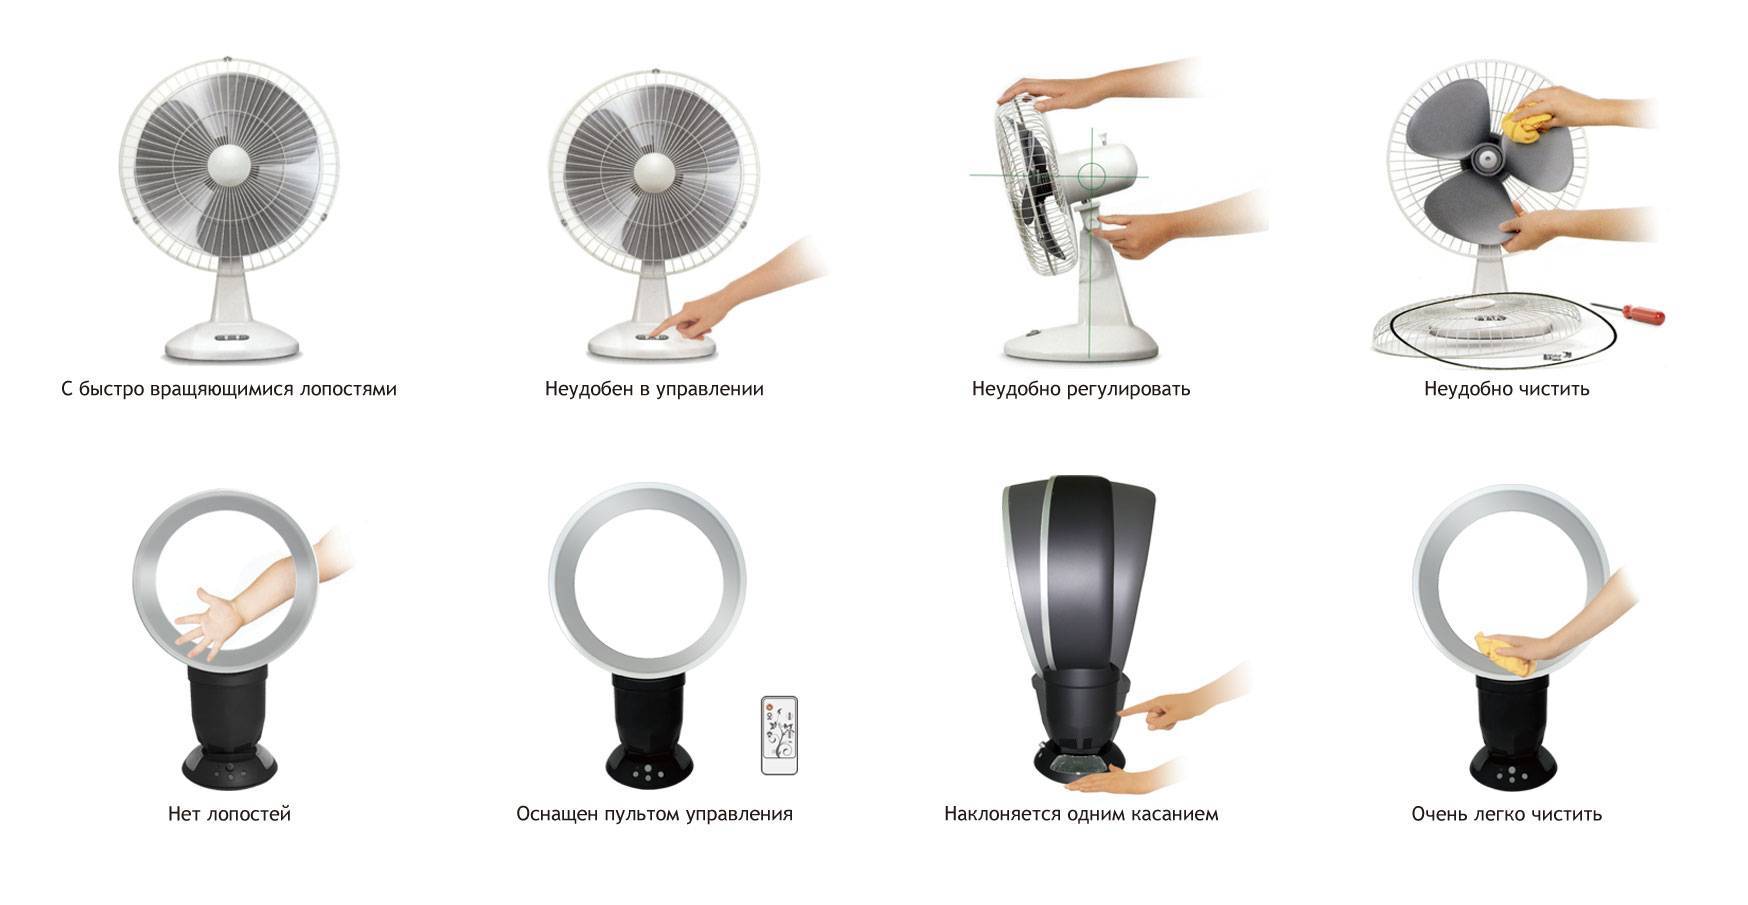 Безлопастной вентилятор: принцип работы, разновидности, преимущества